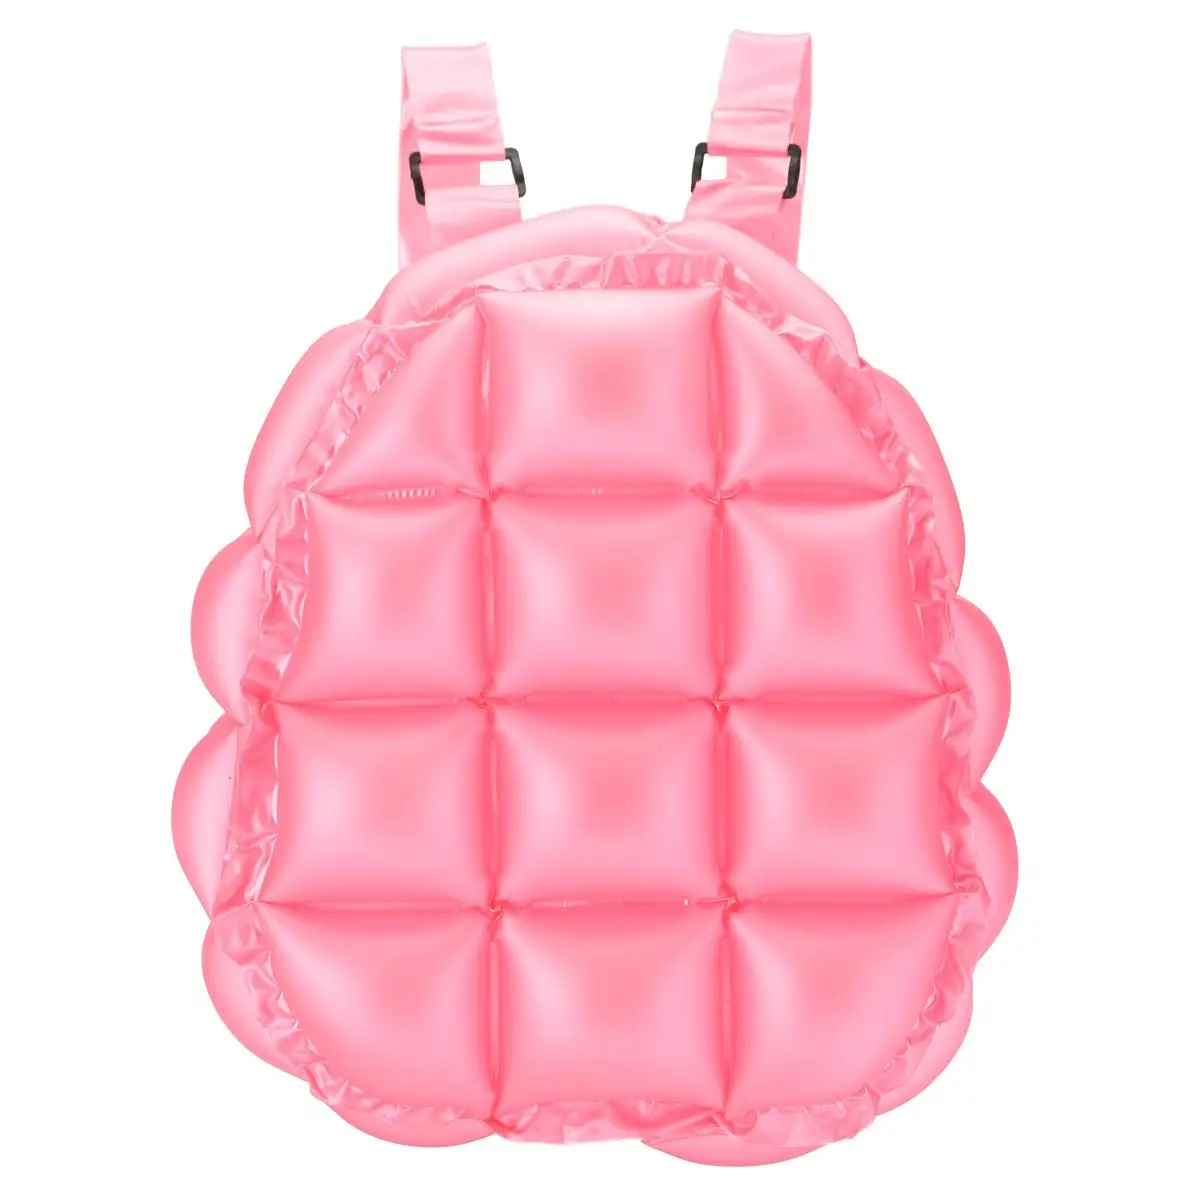 Надувной пузырь дуть рюкзак девушки s школьная сумка пакет 90s ретро праздничный прыжки специй водонепроницаемый и легкий - Цвет: Розовый